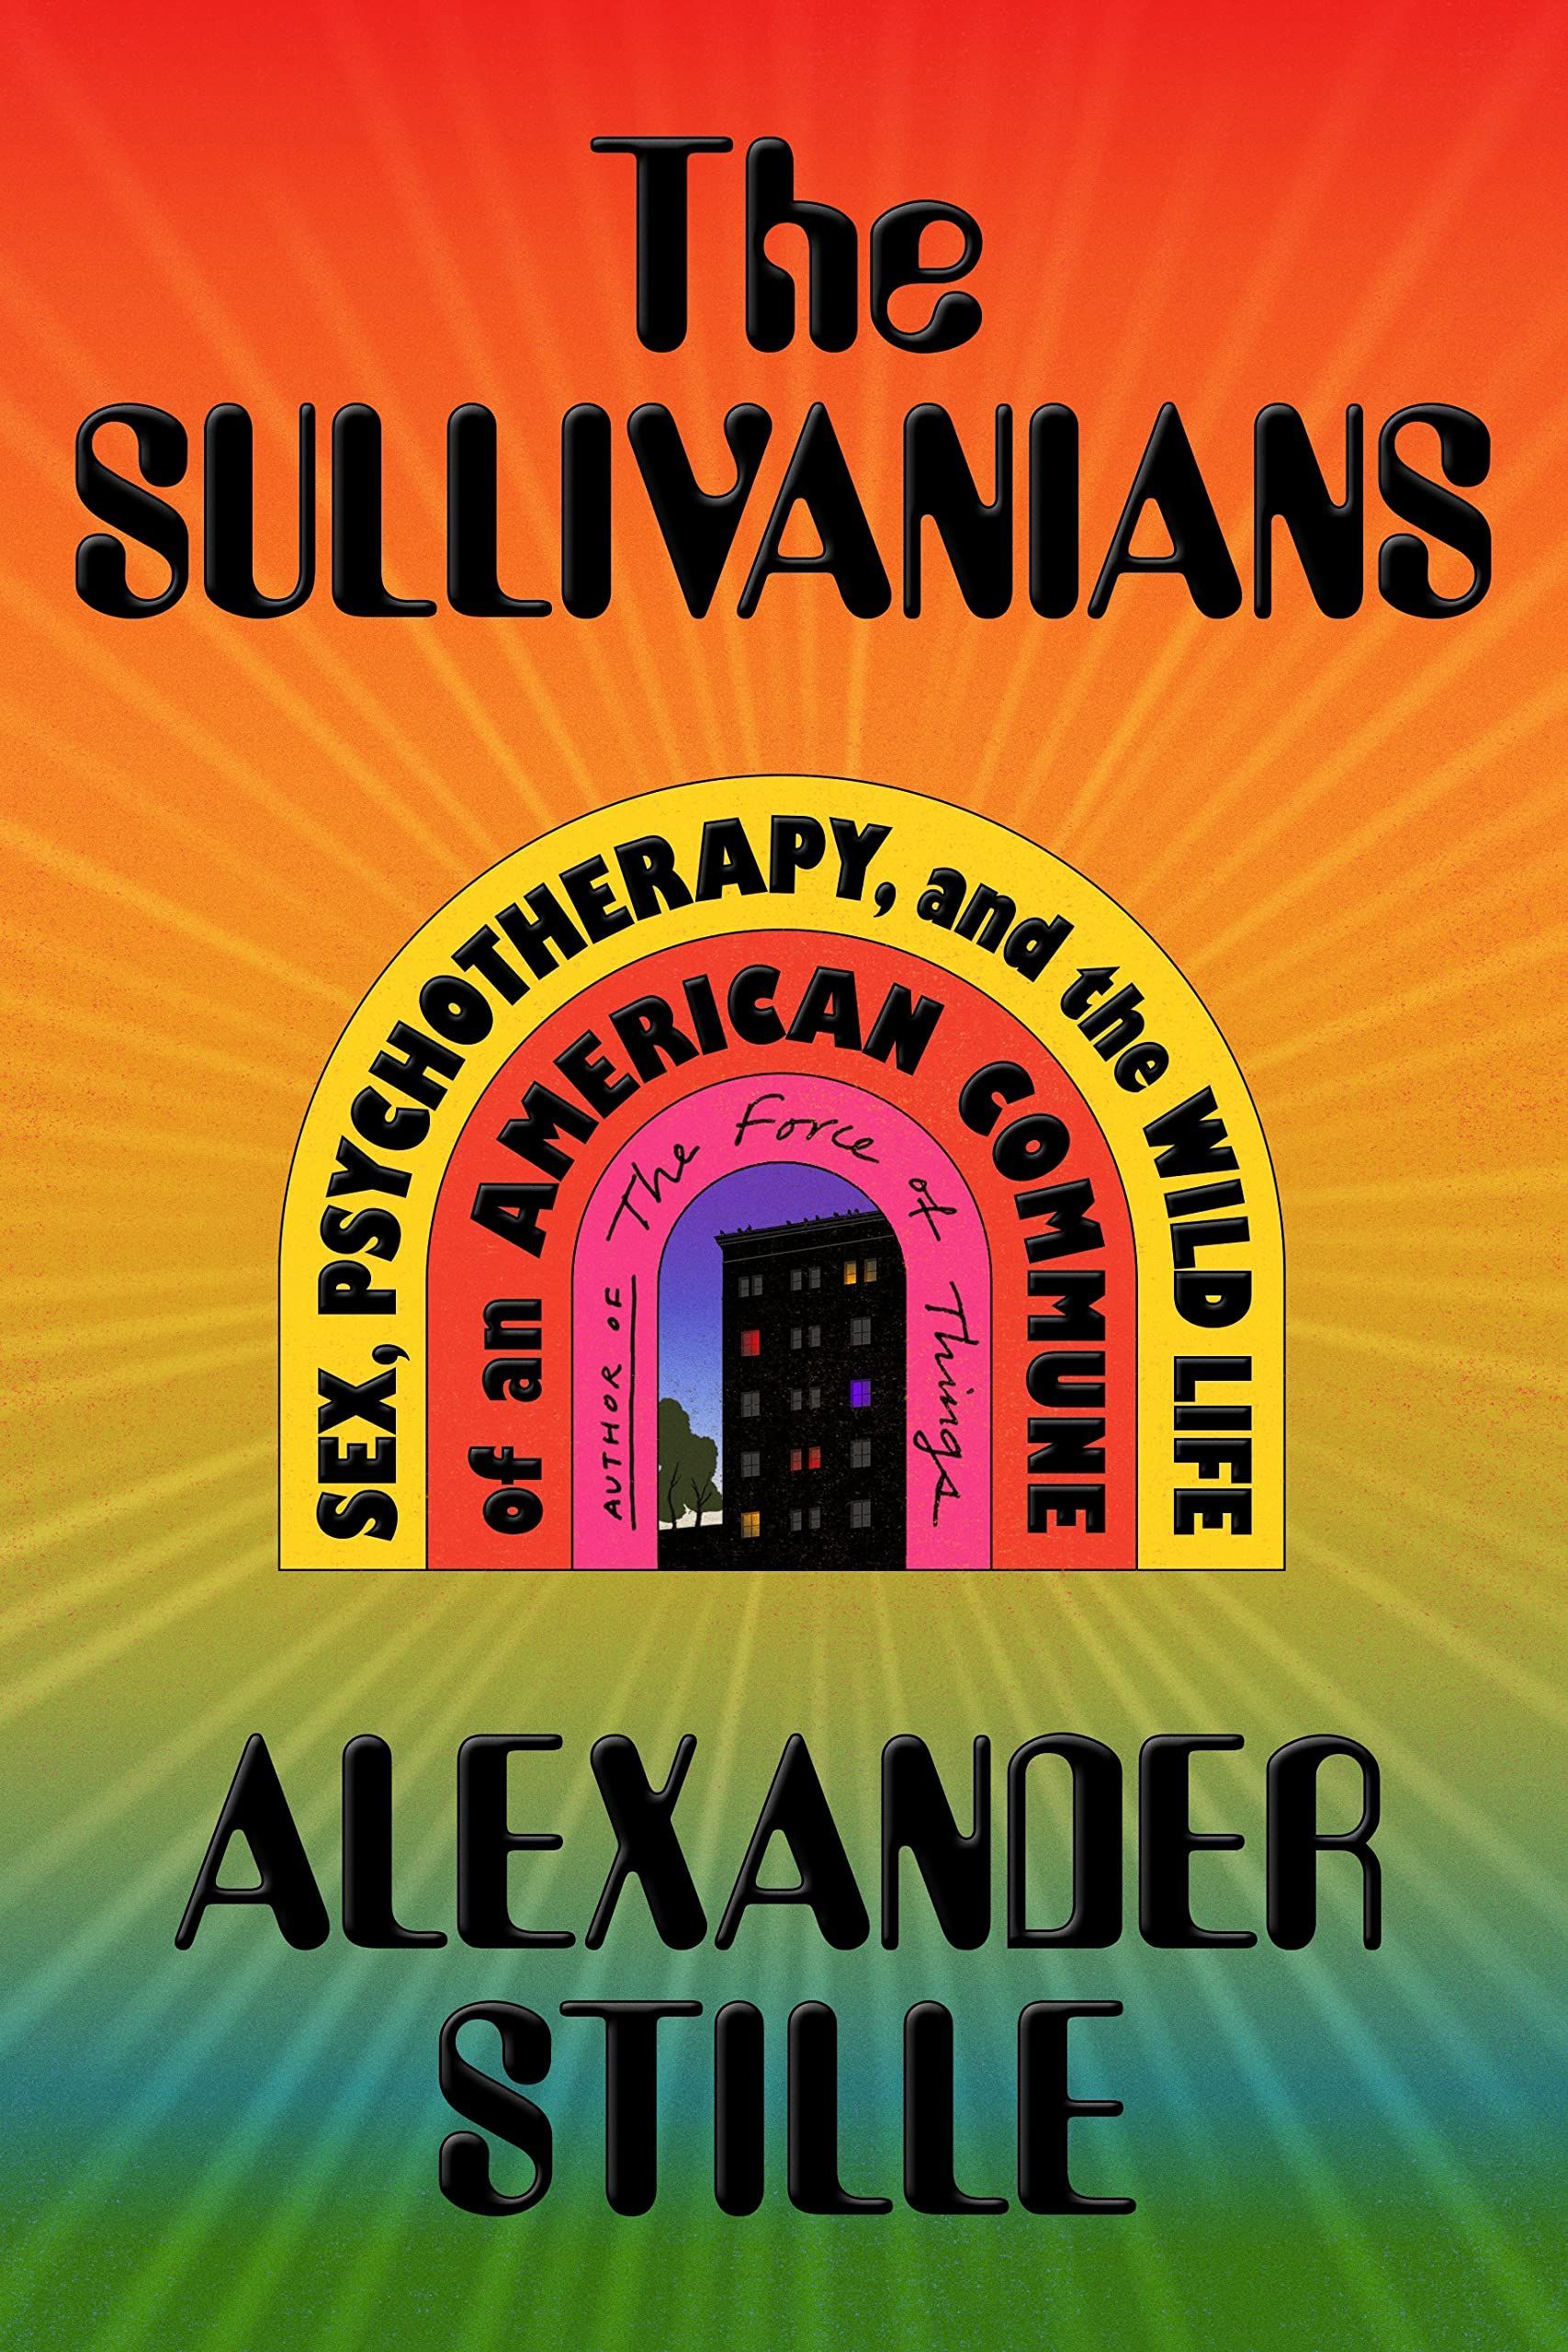 North Korea on the Hudson: On Alexander Stille’s “The Sullivanians”